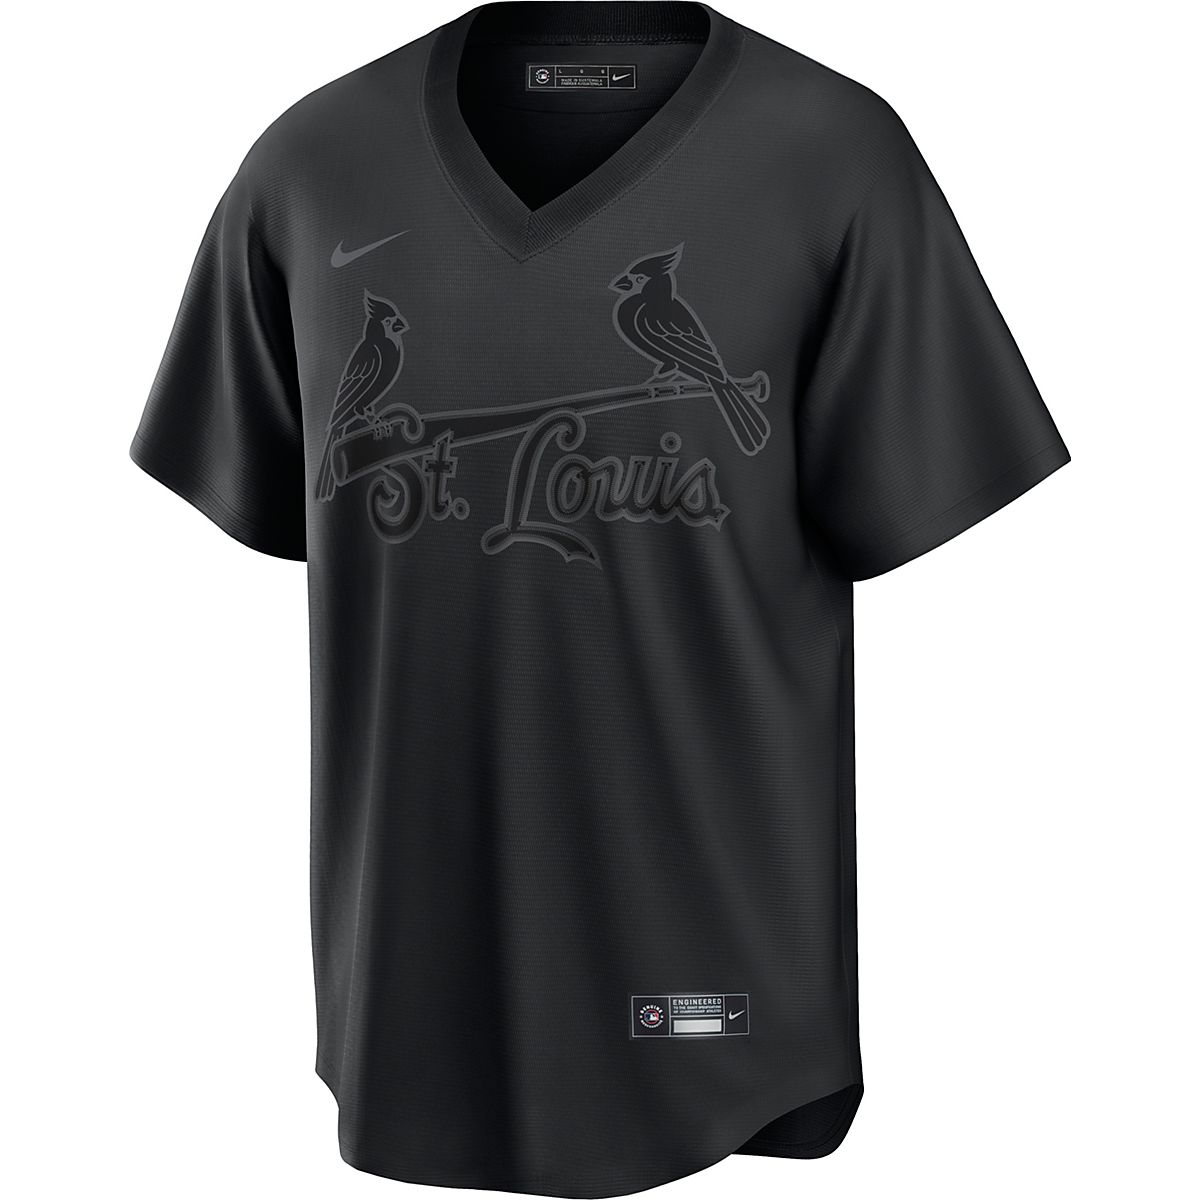 Men's Houston Astros Nike Black Pitch Black Fashion Replica Jersey